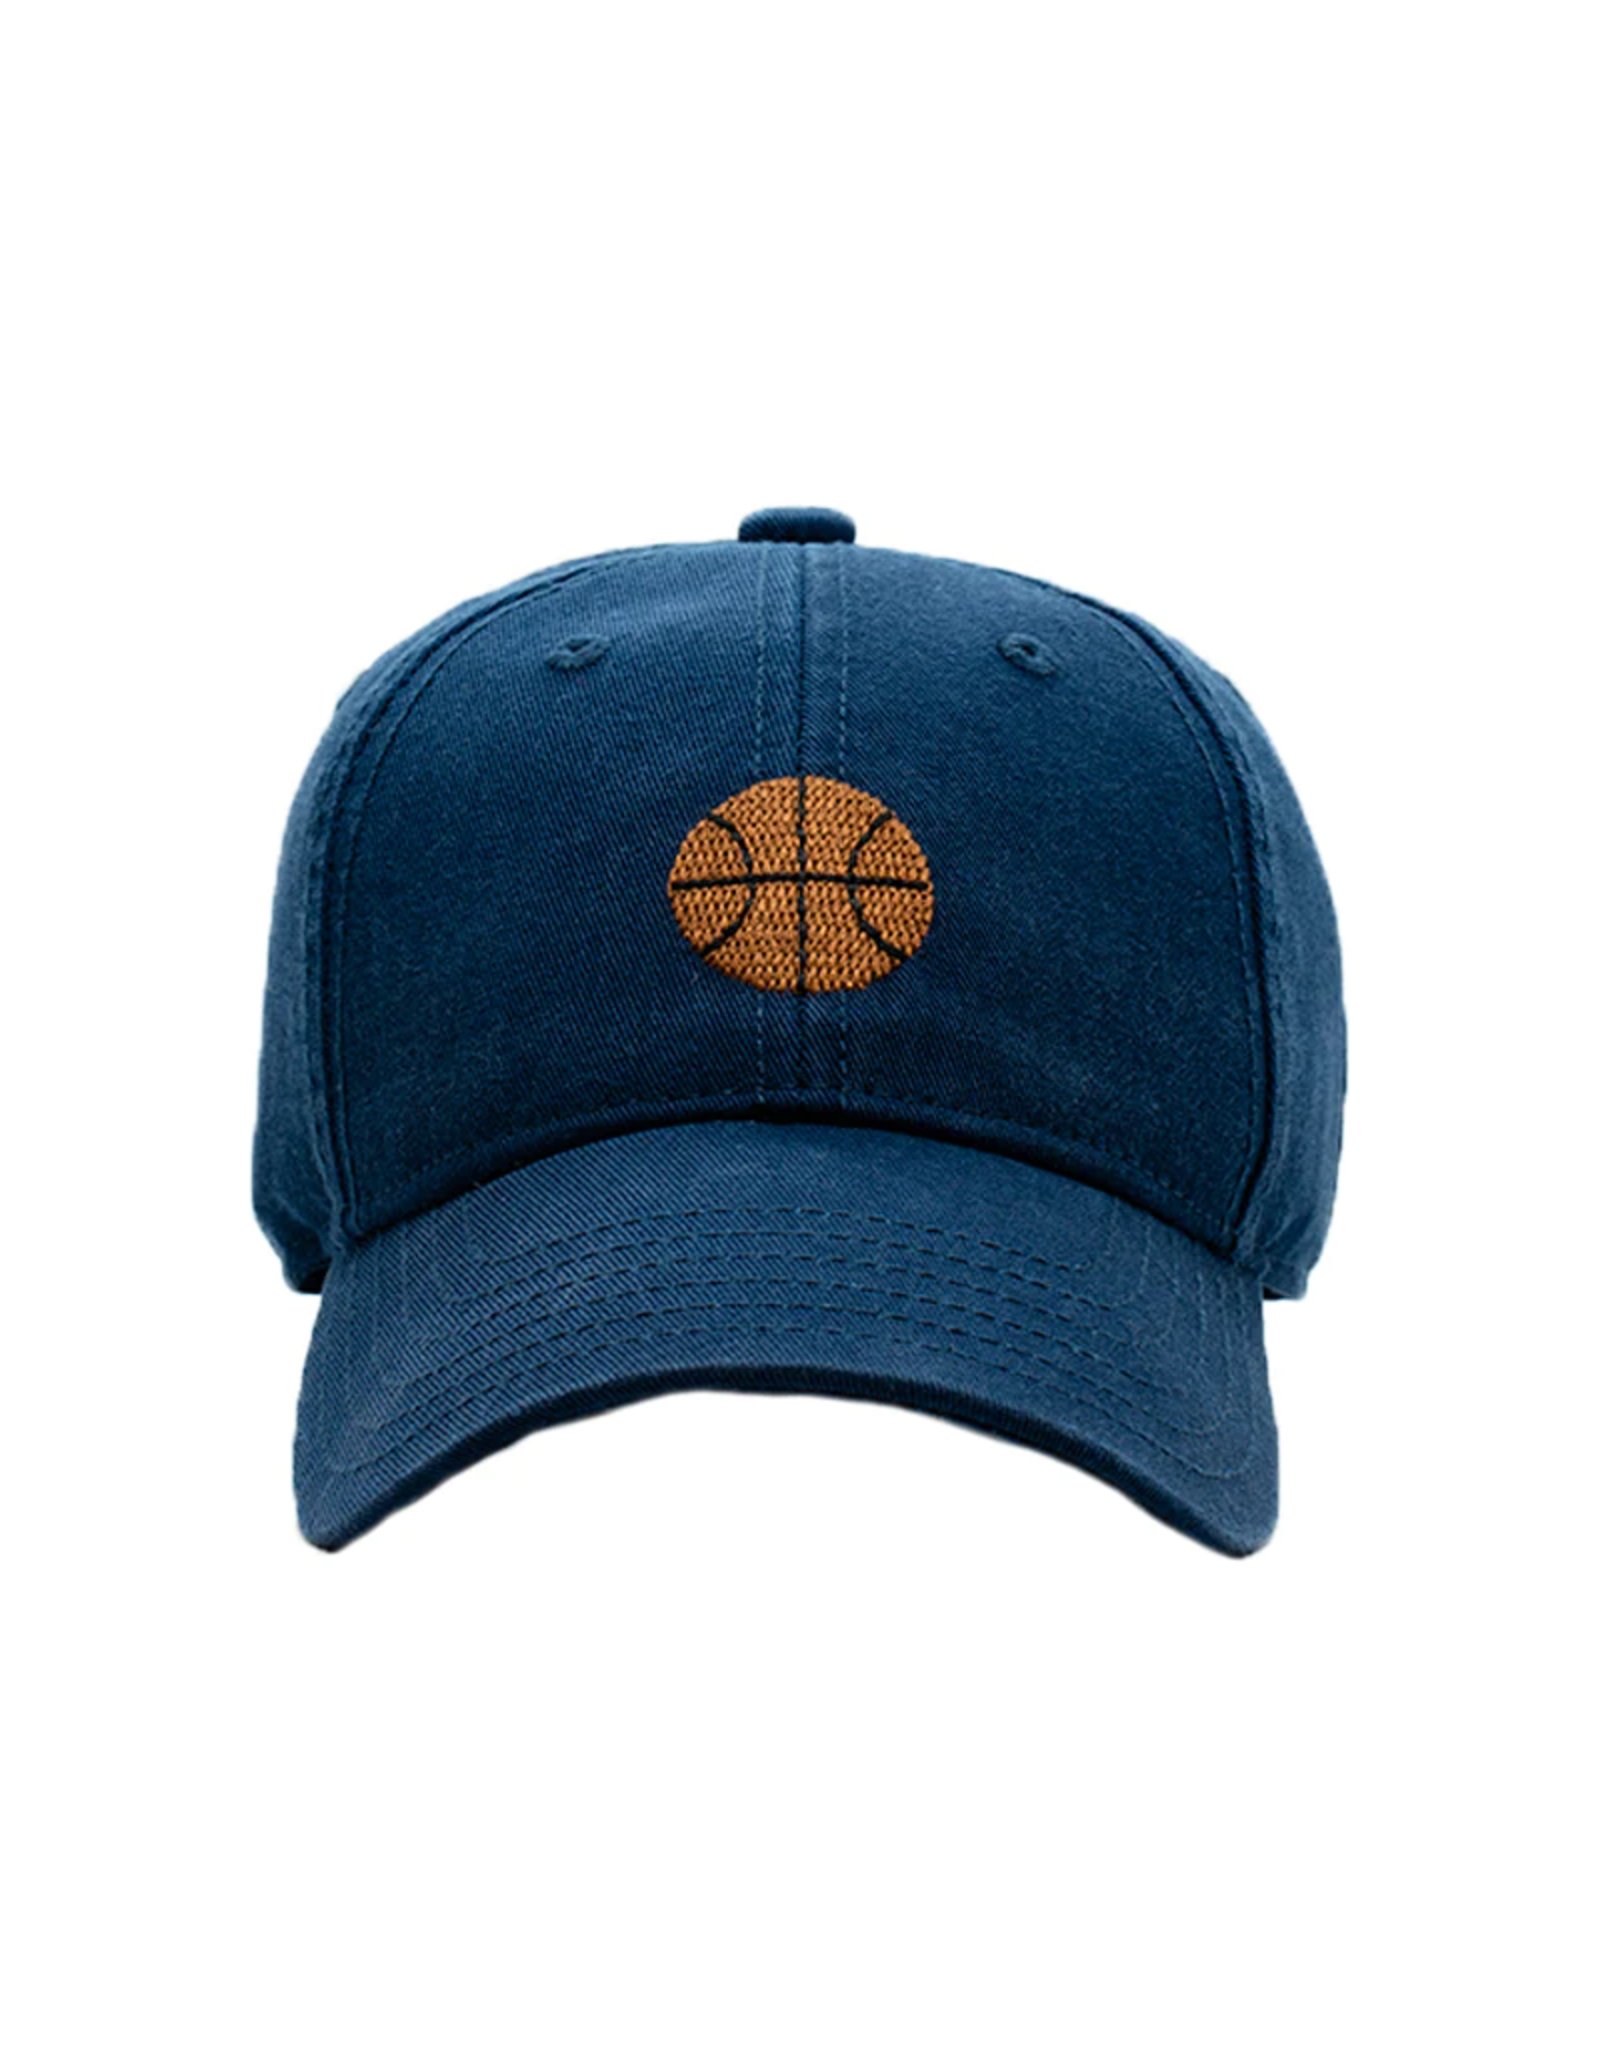 Harding Lane HL Embroidered Hat Cobalt Navy Basketball